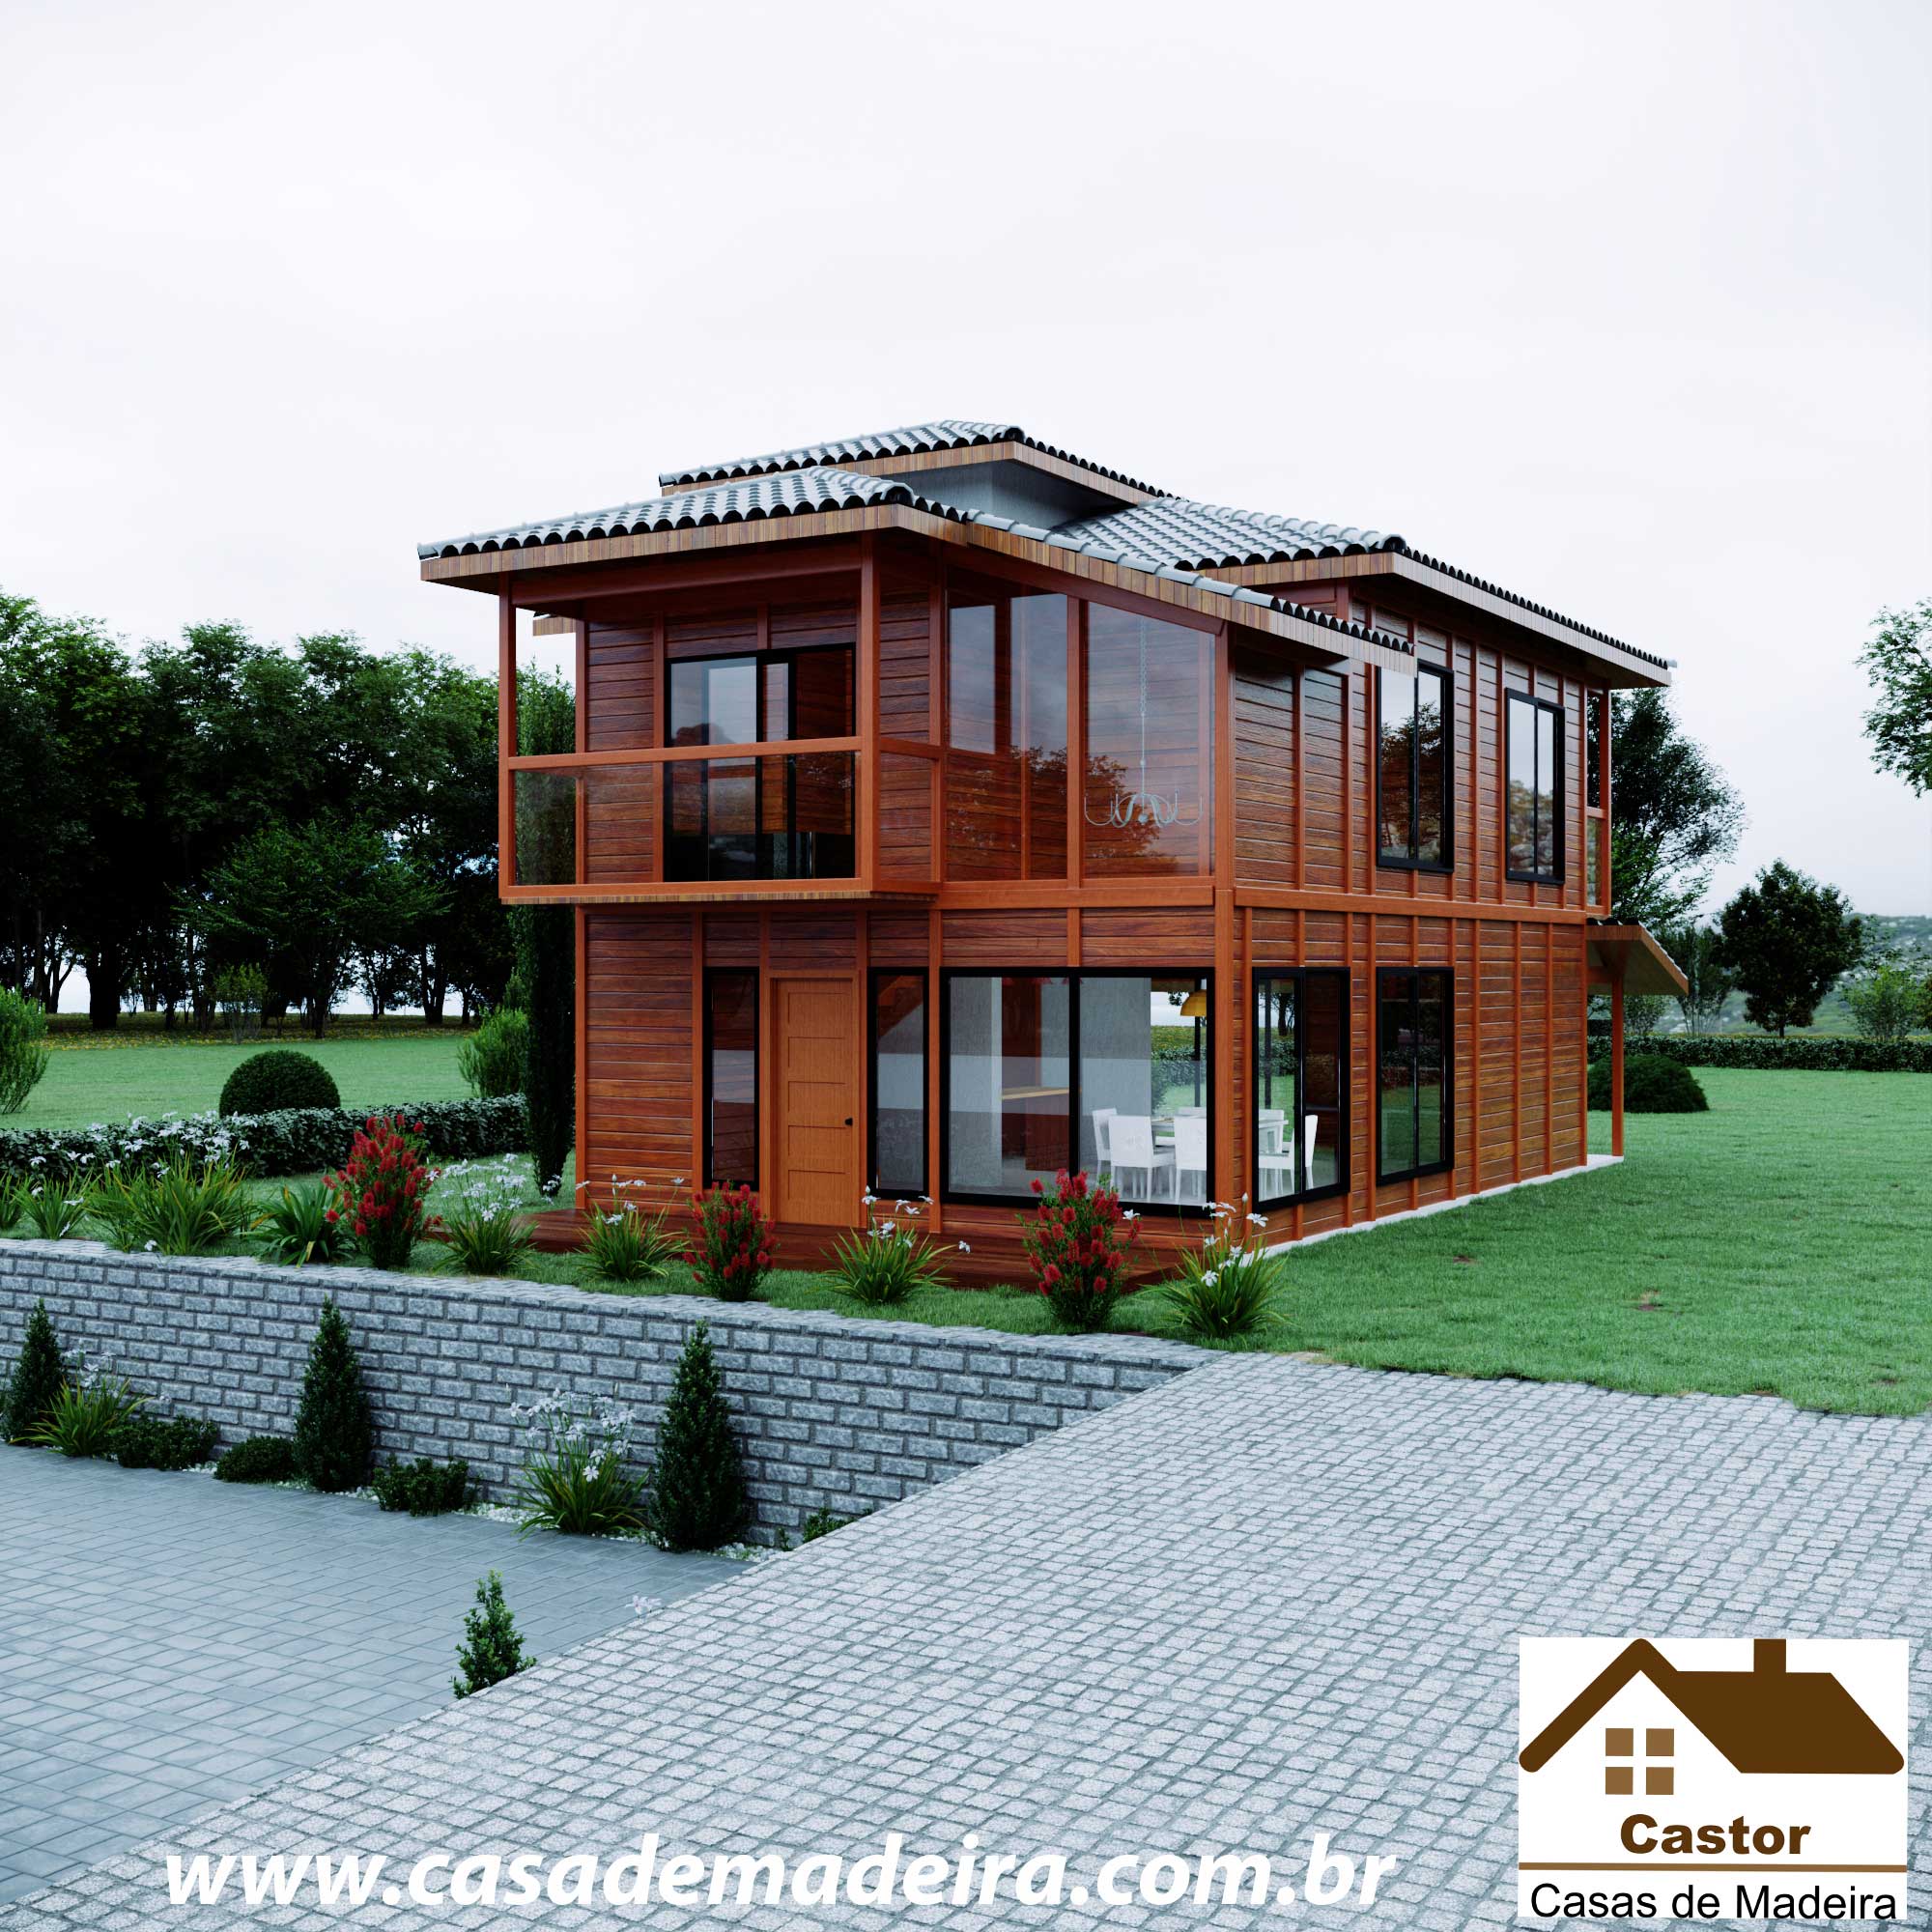 Casa de madeira modelo nova zelandia